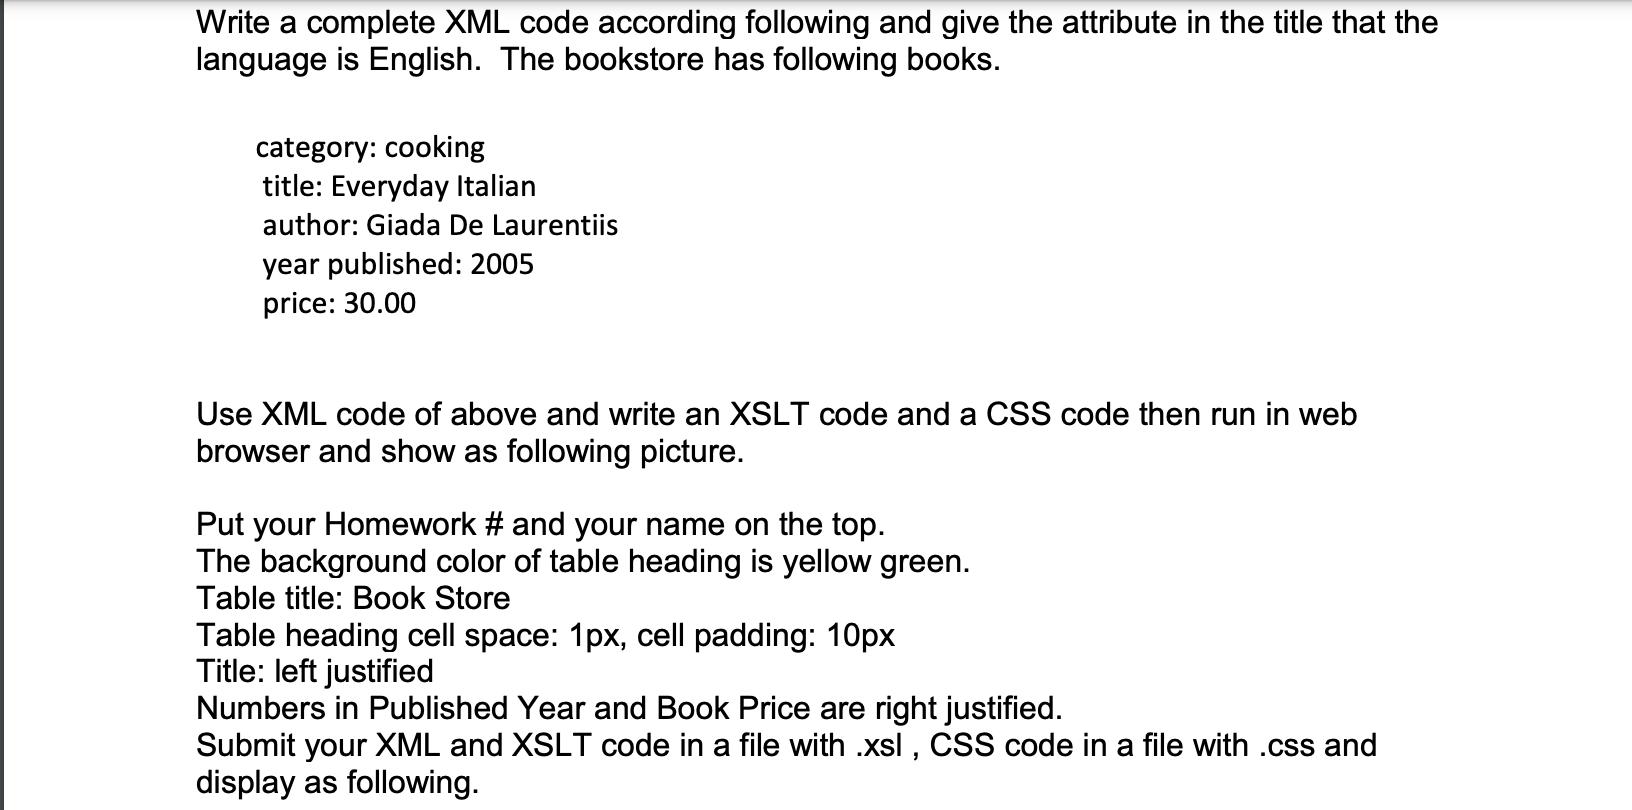 Mã XML là một ngôn ngữ chung để truyền tải dữ liệu. Hãy thử nhấn vào ảnh liên quan để khám phá cách sử dụng mã XML và áp dụng nó vào công việc của bạn nhé! (Translation: XML code is a common language for transmitting data. Try clicking on the related image to explore how to use XML code and apply it to your work!)